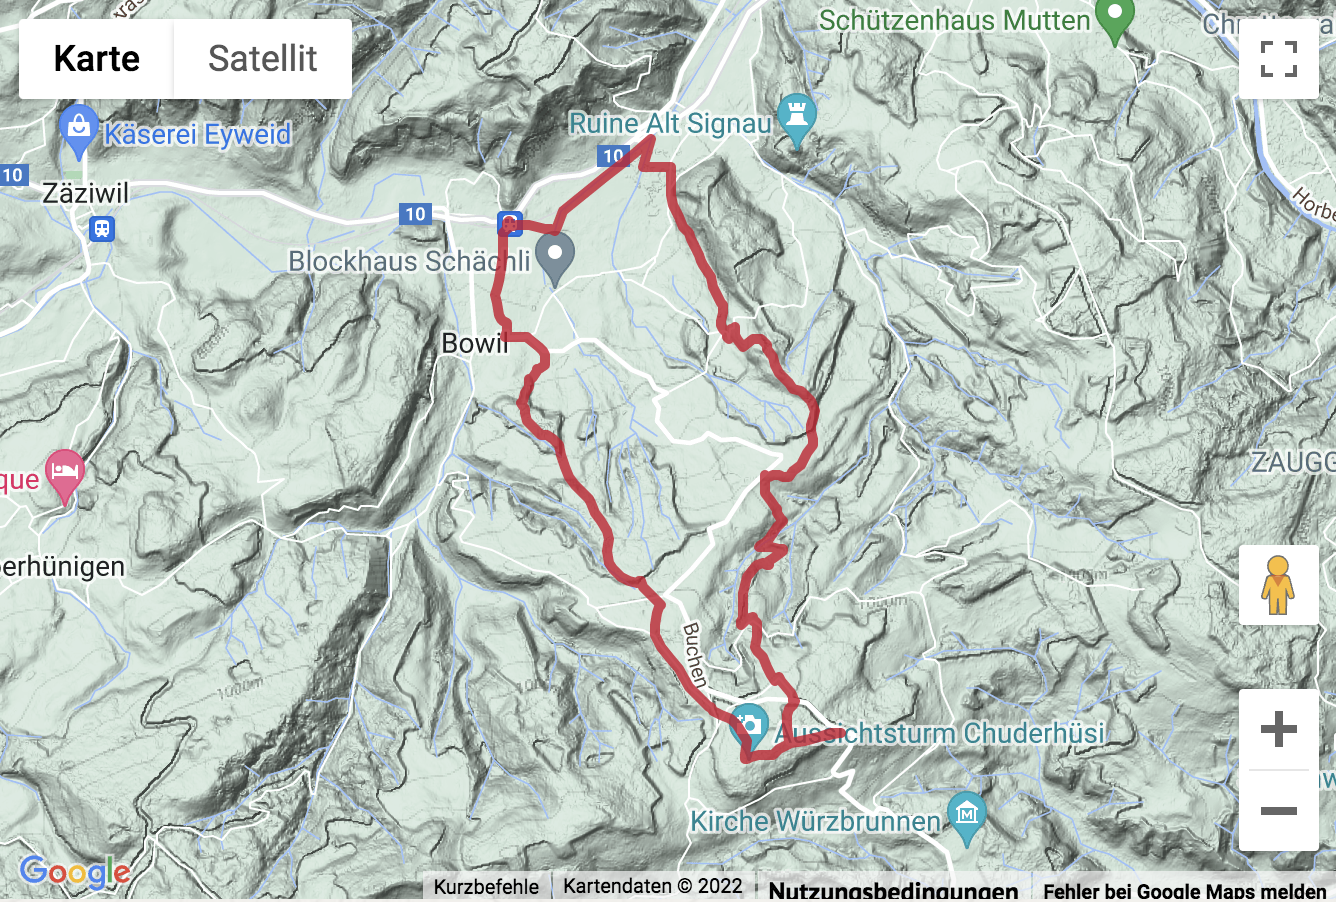 Carte de situation avec l'itinéraire pour la Ronde de Bowil au Chuderhüsi